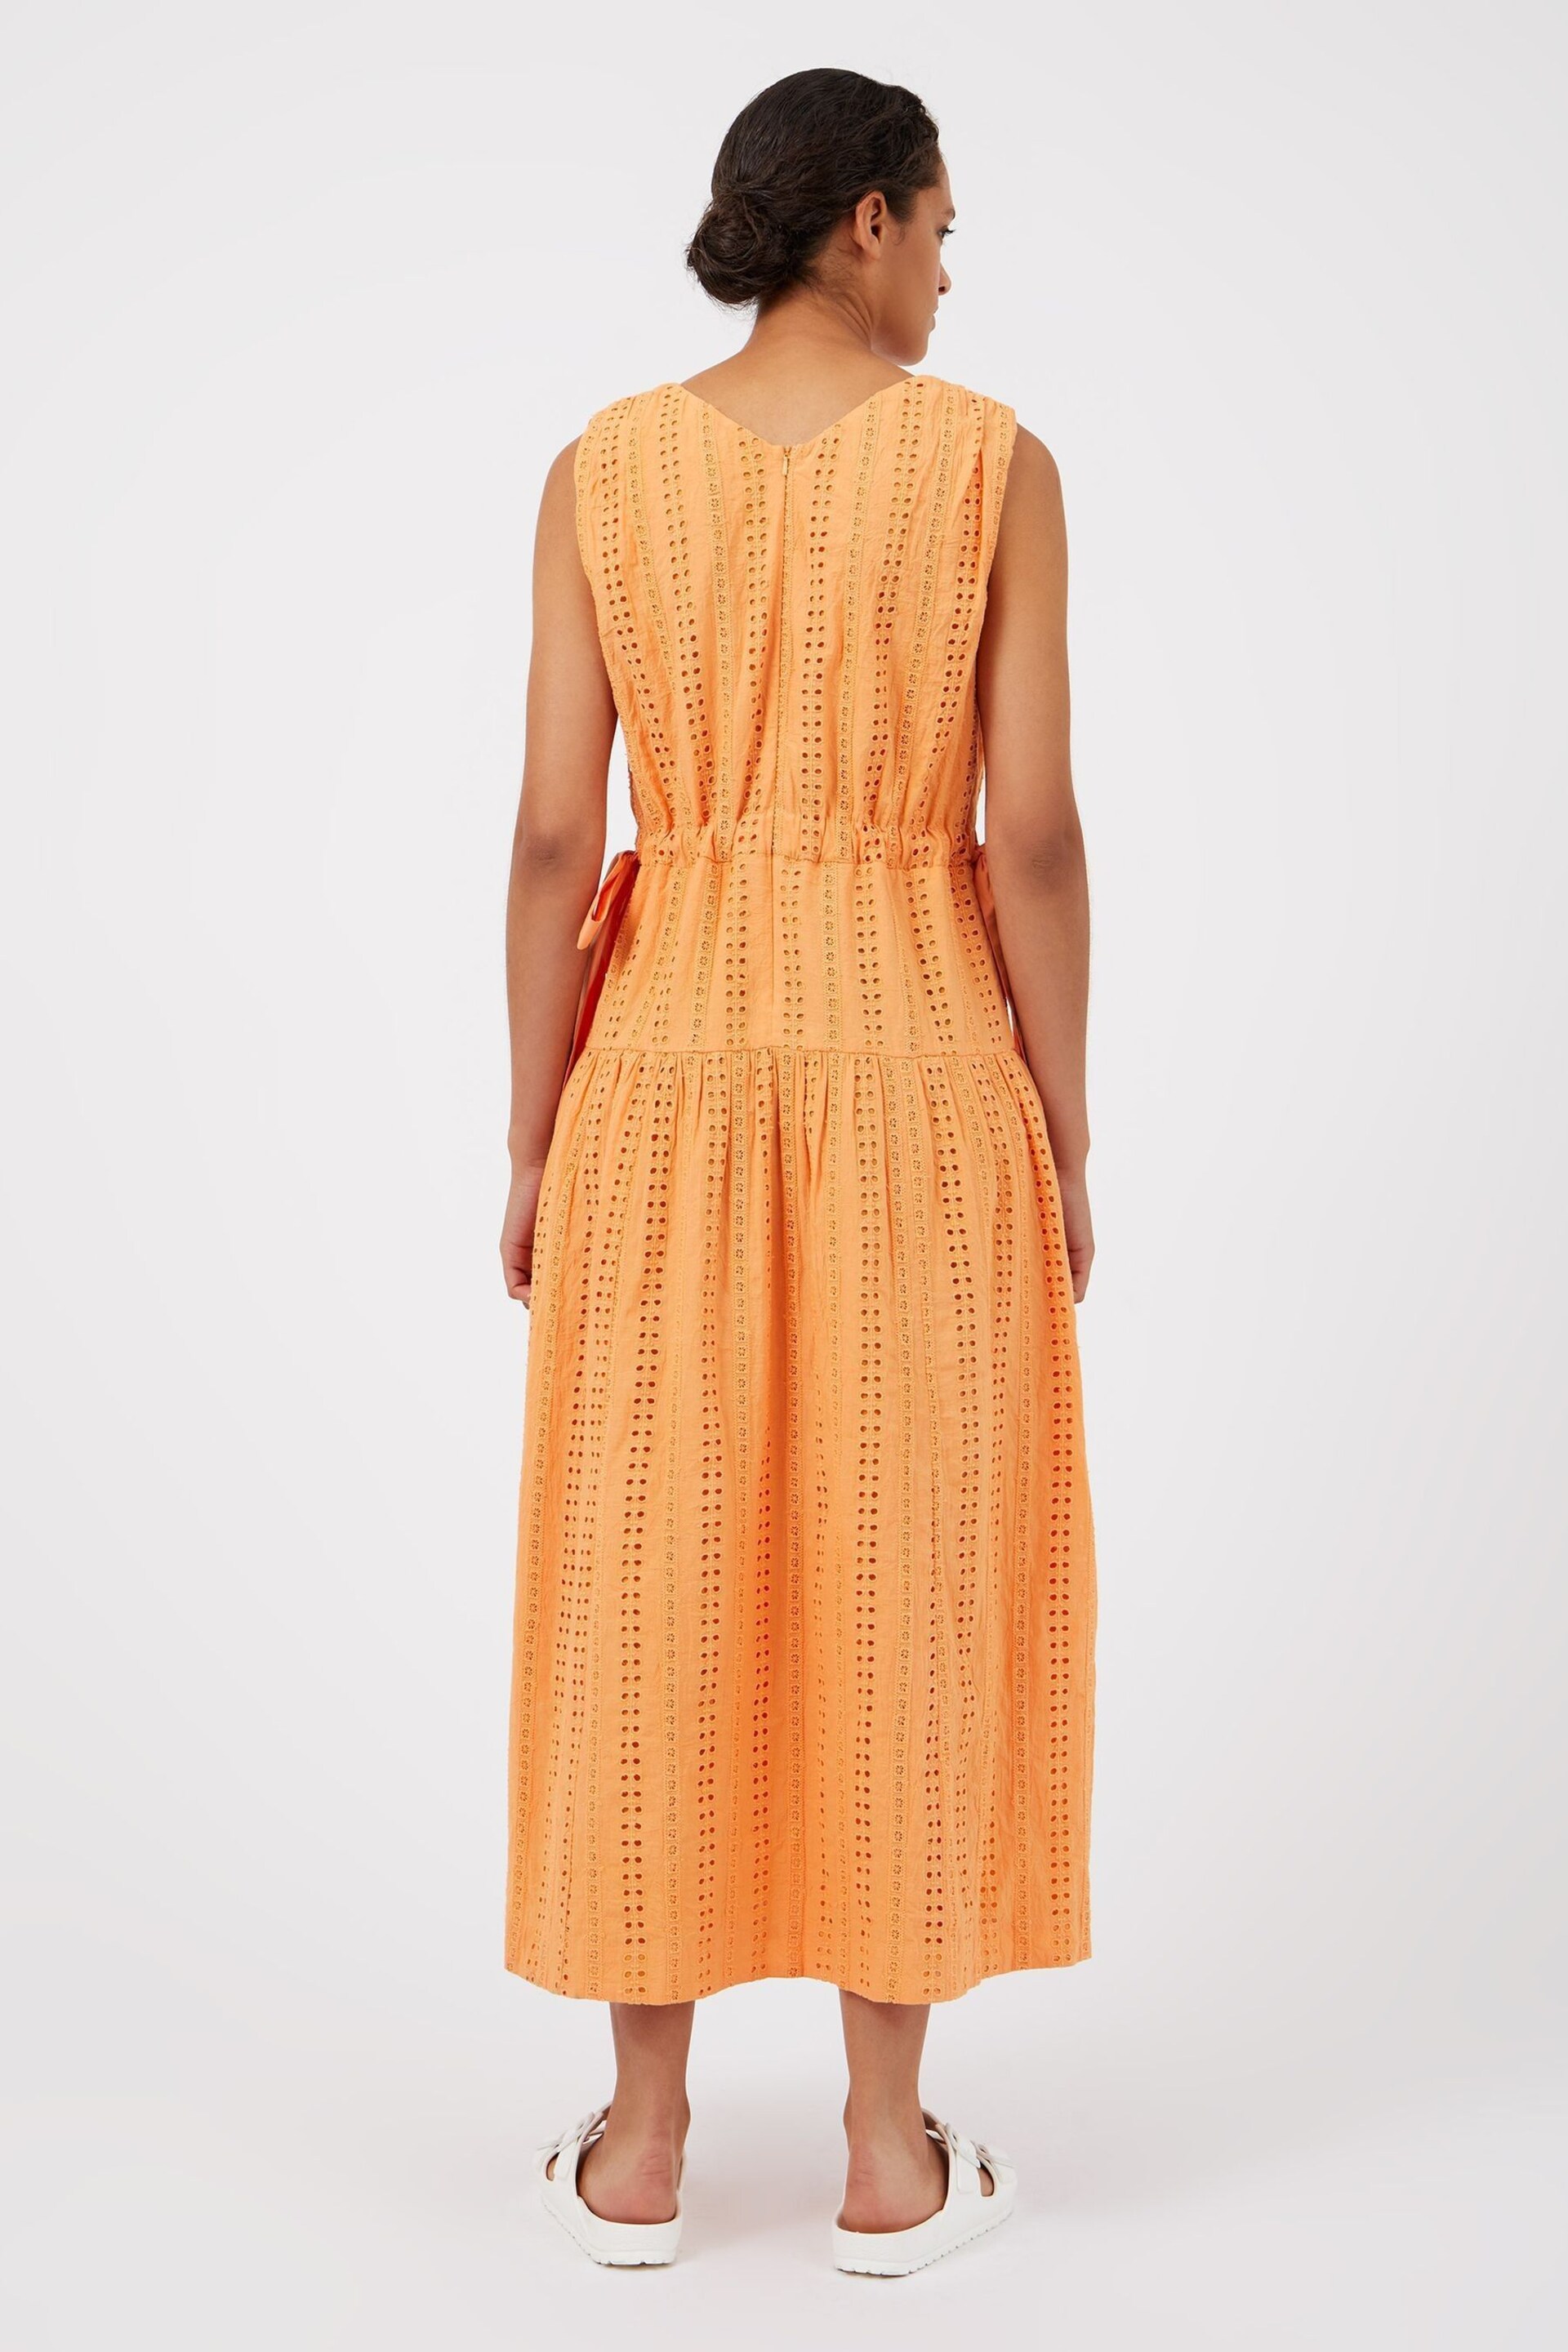 Great Plains Orange Summer Embroidery V Neck Dress - Image 2 of 4